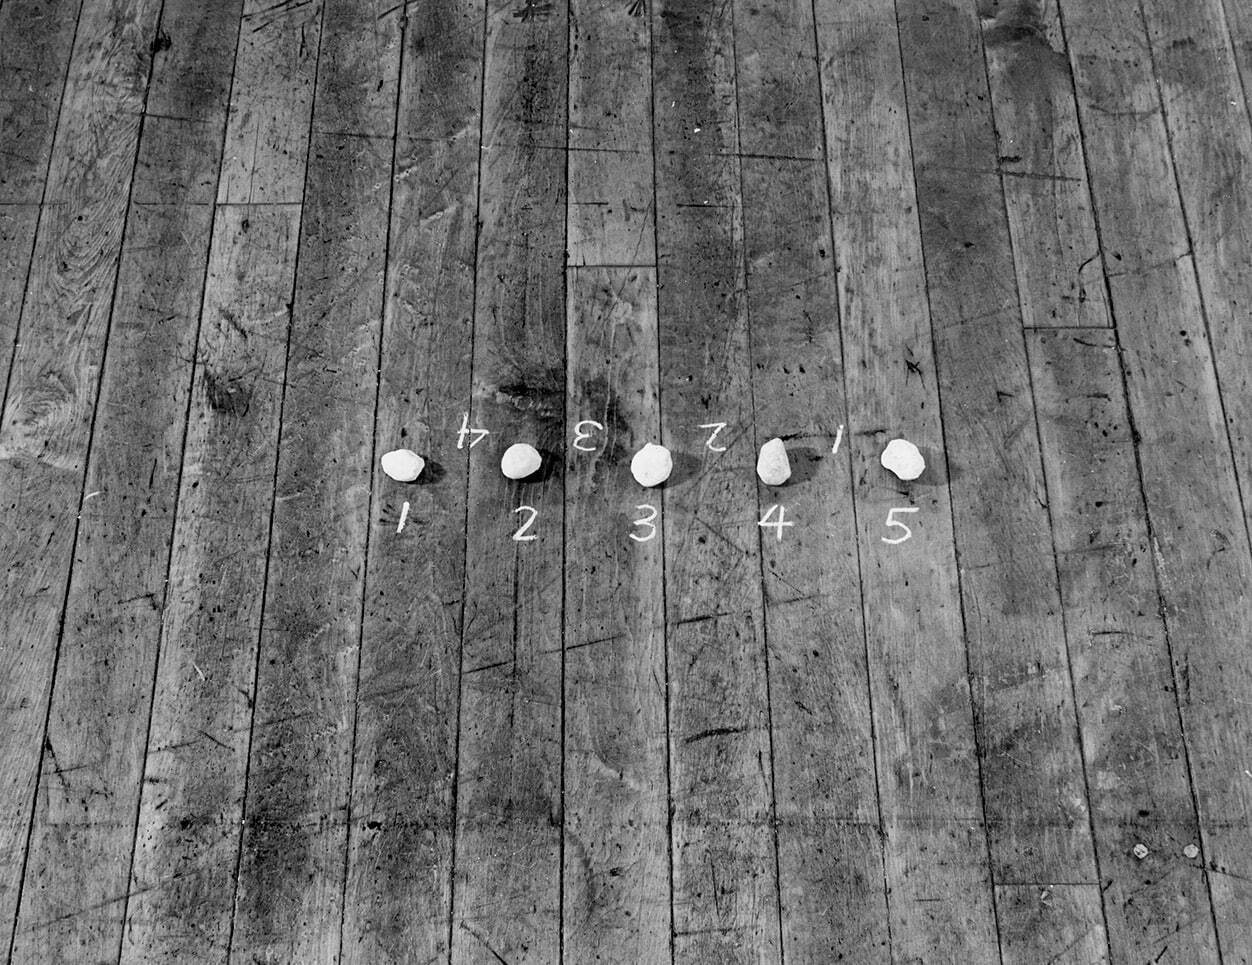 メル・ボックナー 《セオリー・オブ・スカルプチャー(五つの石／四つの間)》 1972年 国立国際美術館蔵
© Mel Bochner